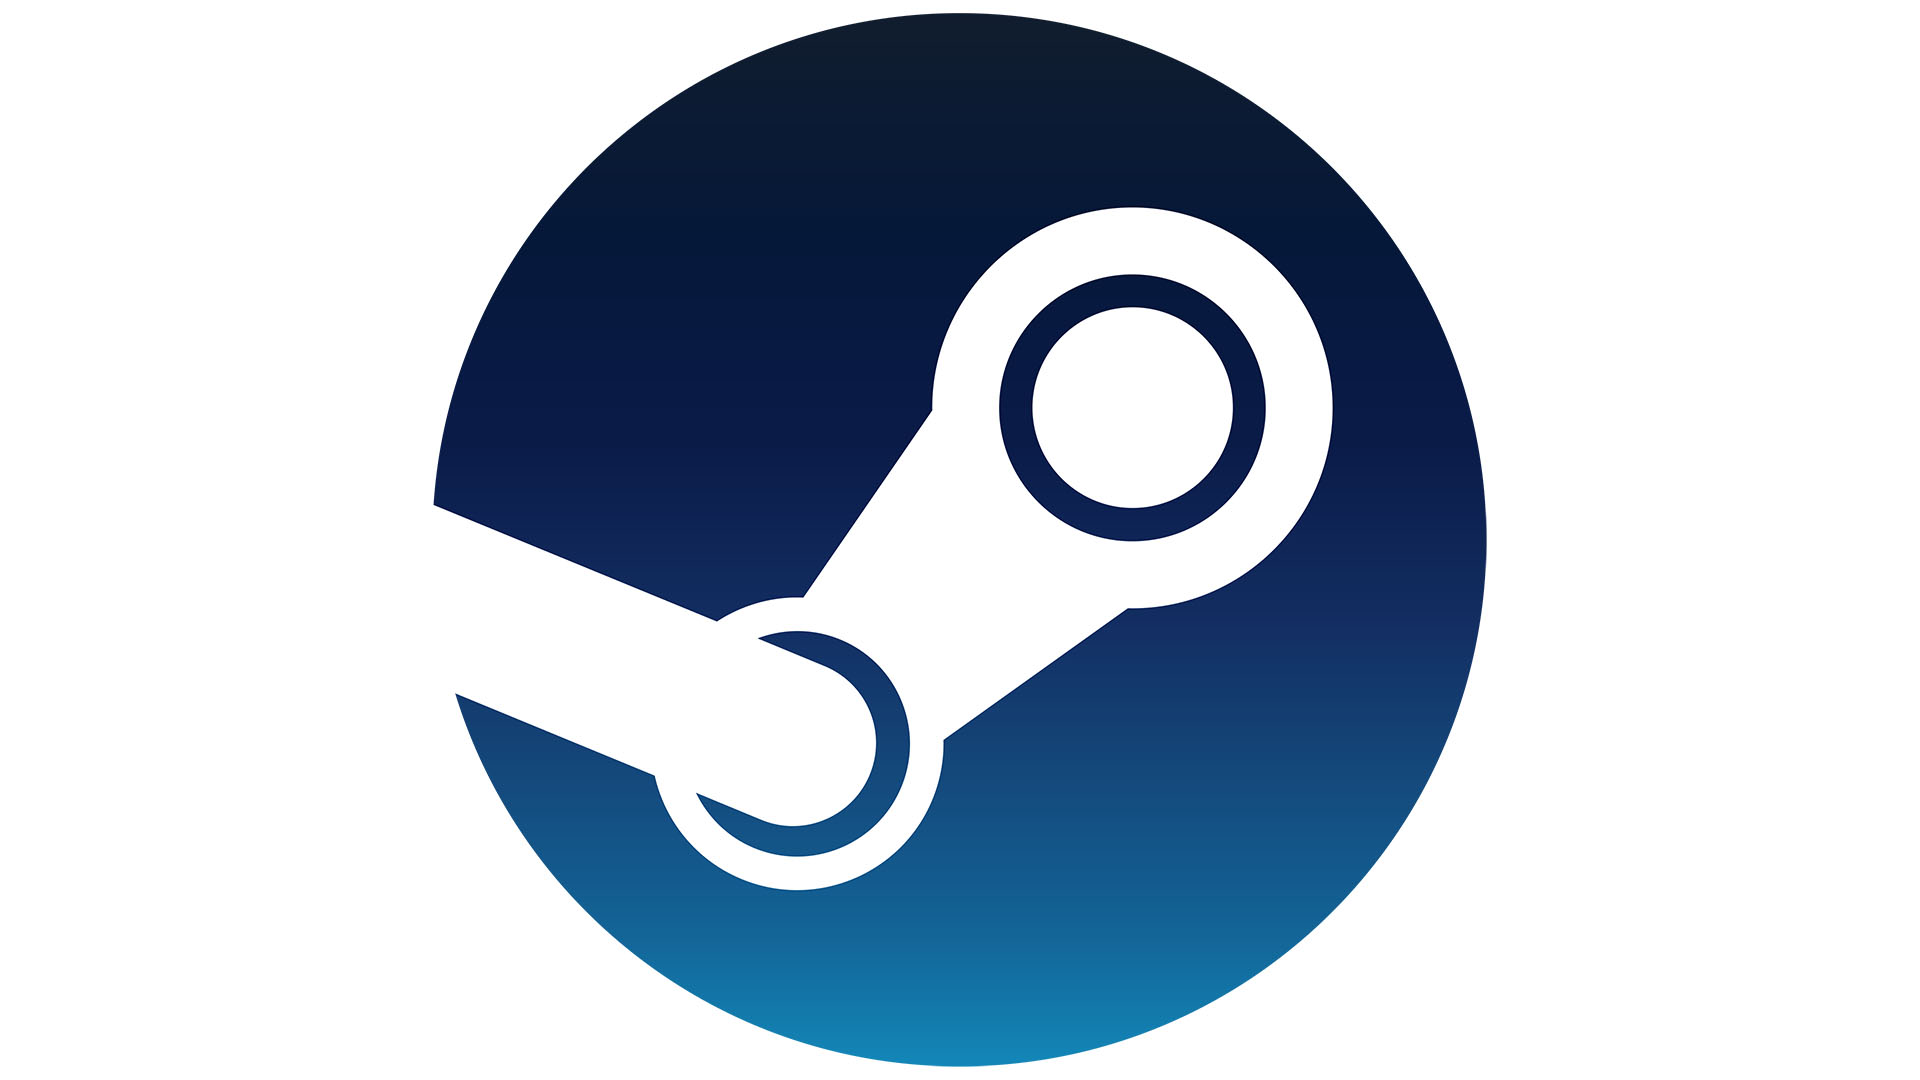 Steam-Logo